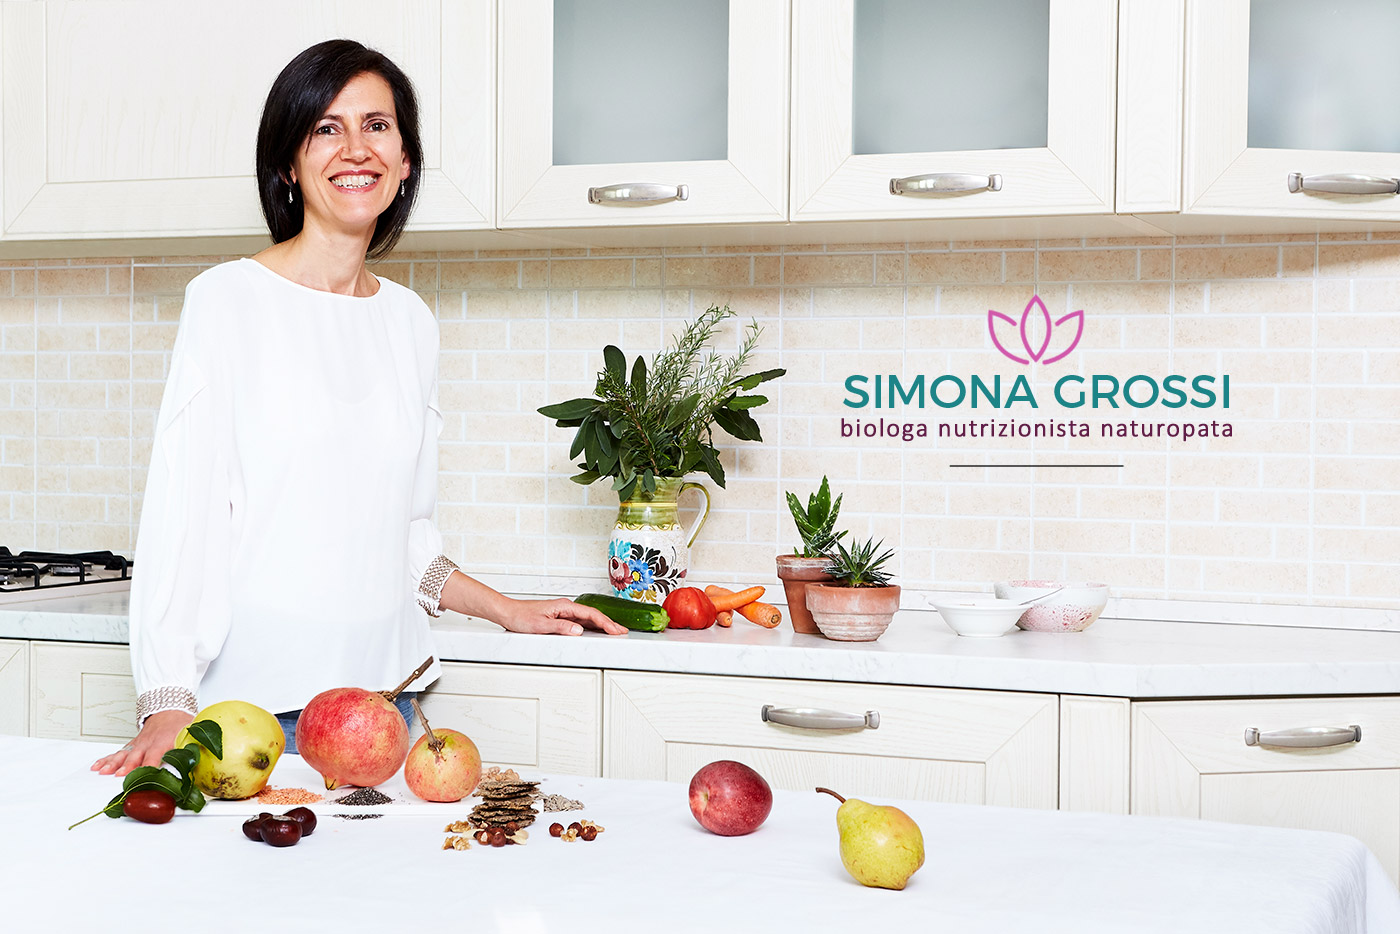 Simona Grossi biologa nutrizionista e naturopata